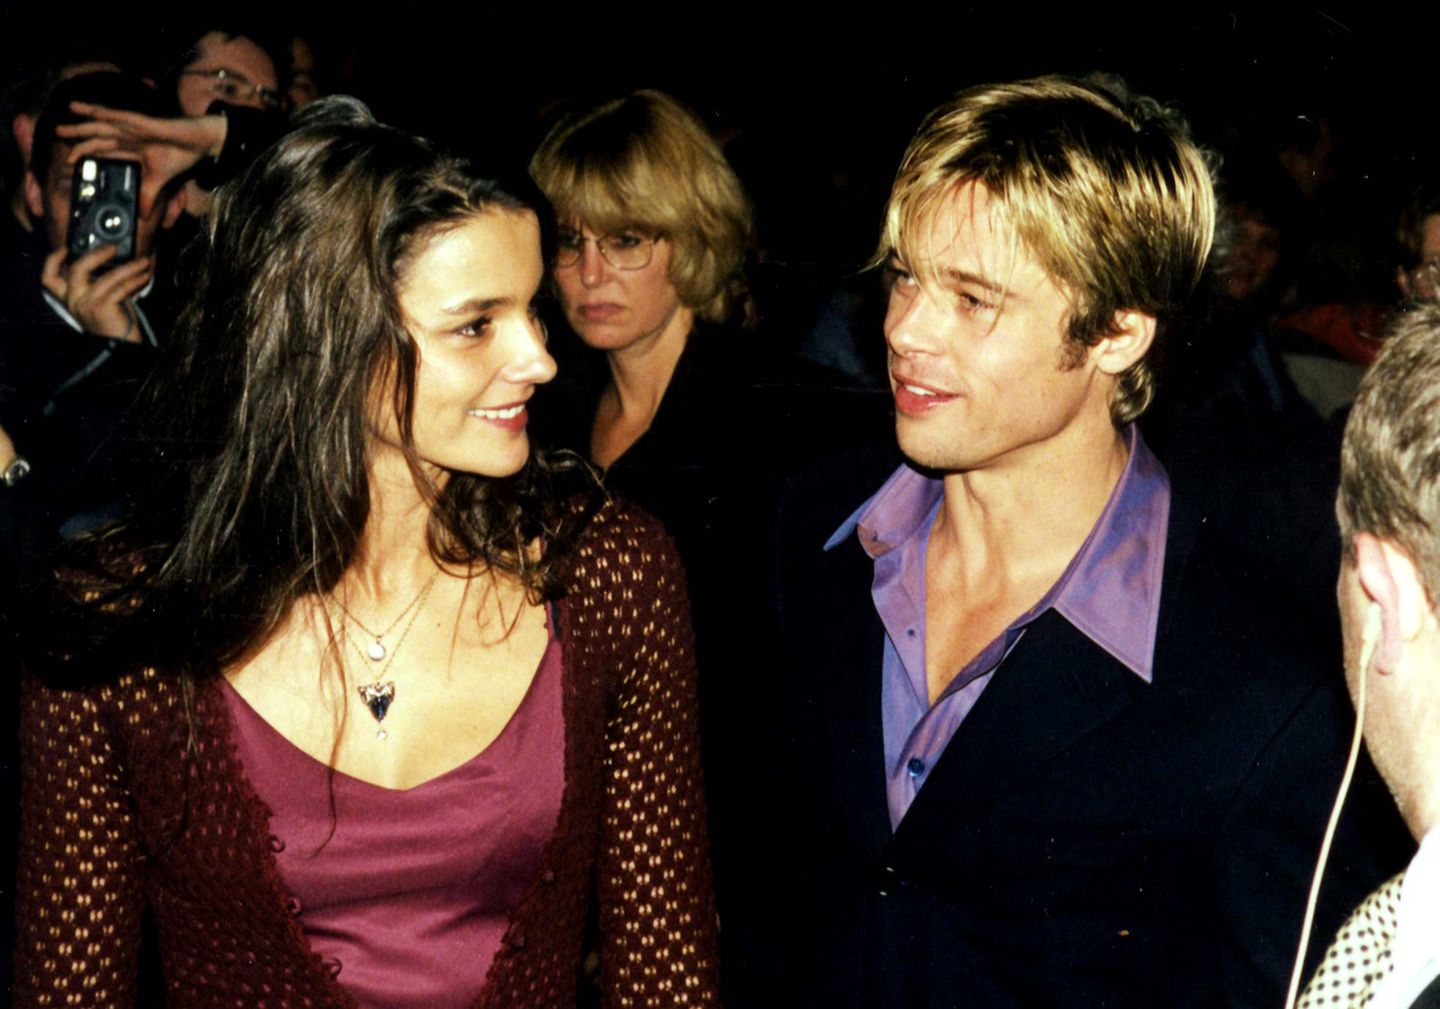 Brad Pitt und Katja von Garnier  1997 sieht man Brad Pitt und die deutsche Regisseurin Katja von Garnier Händchenhaltend auf der Premiere von "Sieben Jahre in Tibet". Die Bilder gehen um die Welt, doch kurze Zeit später hat Brad Pitt schon eine andere Frau im Arm.